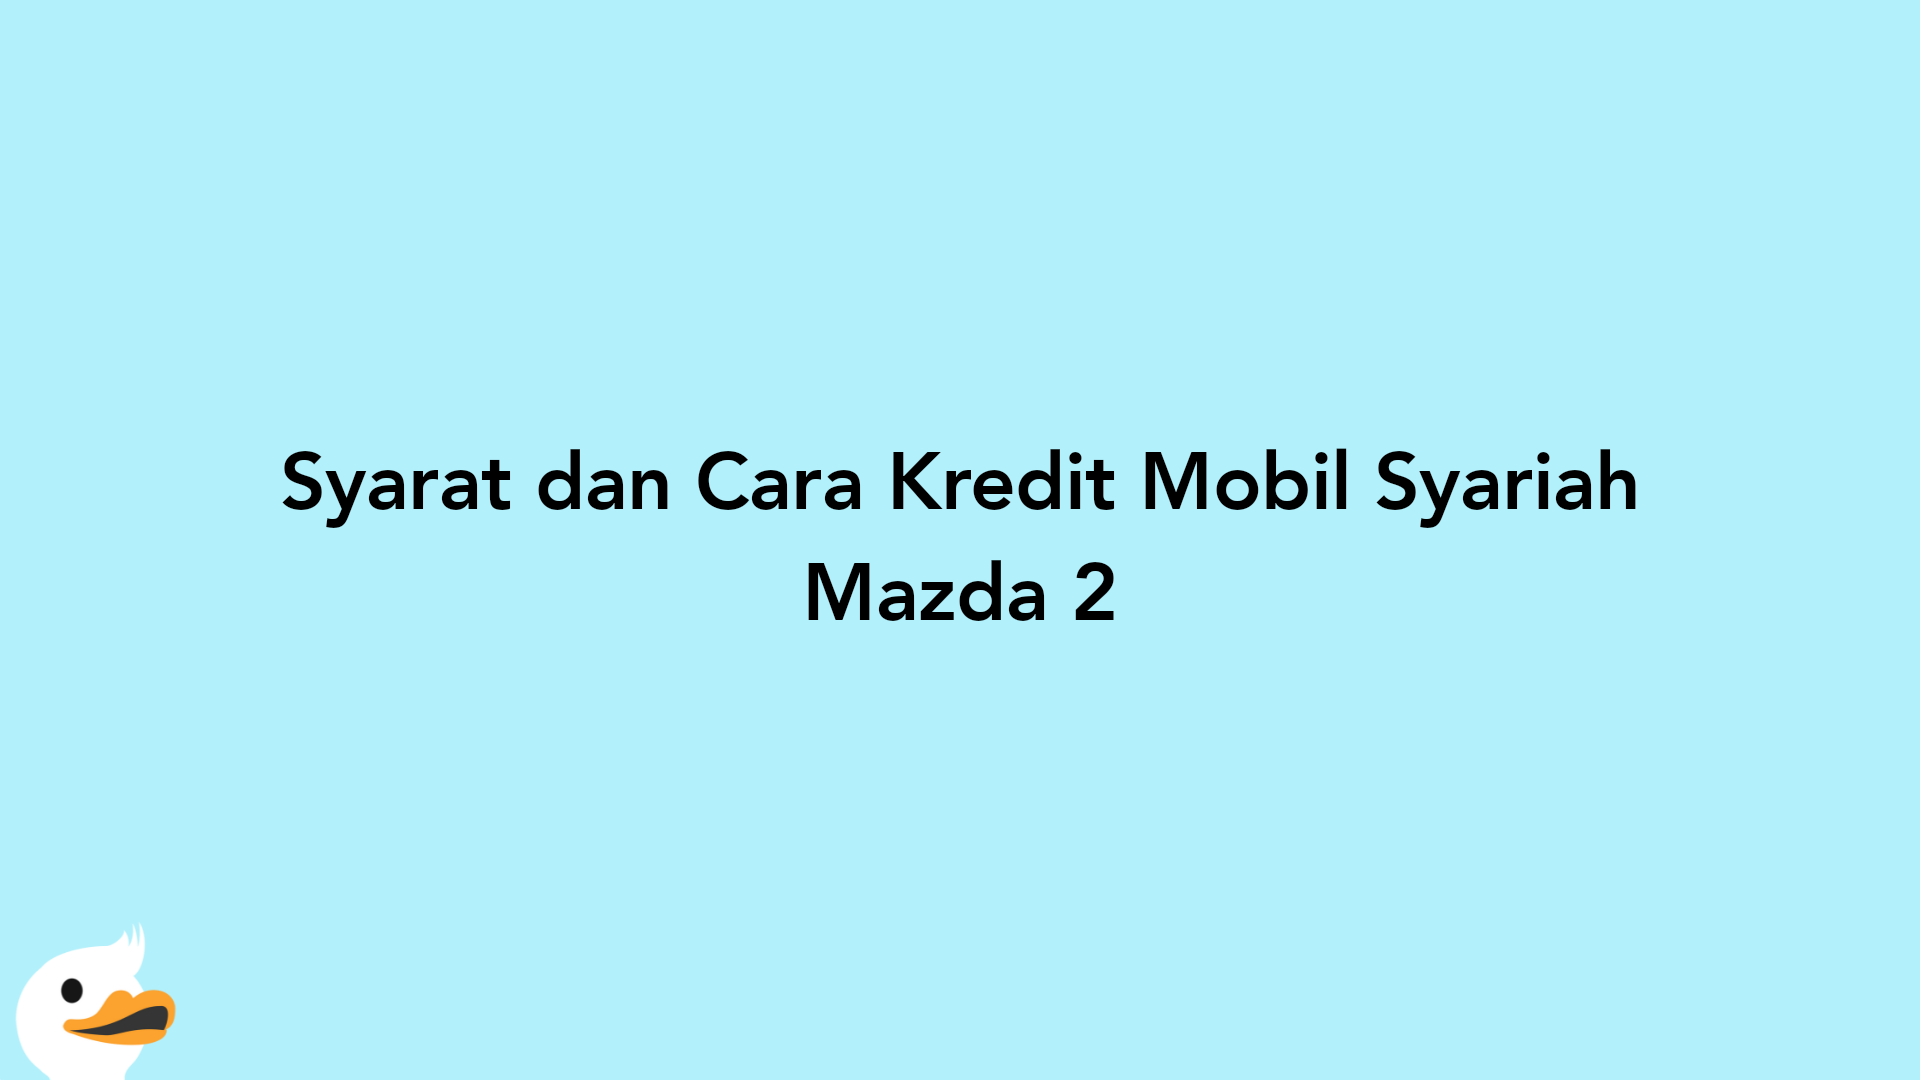 Syarat dan Cara Kredit Mobil Syariah Mazda 2